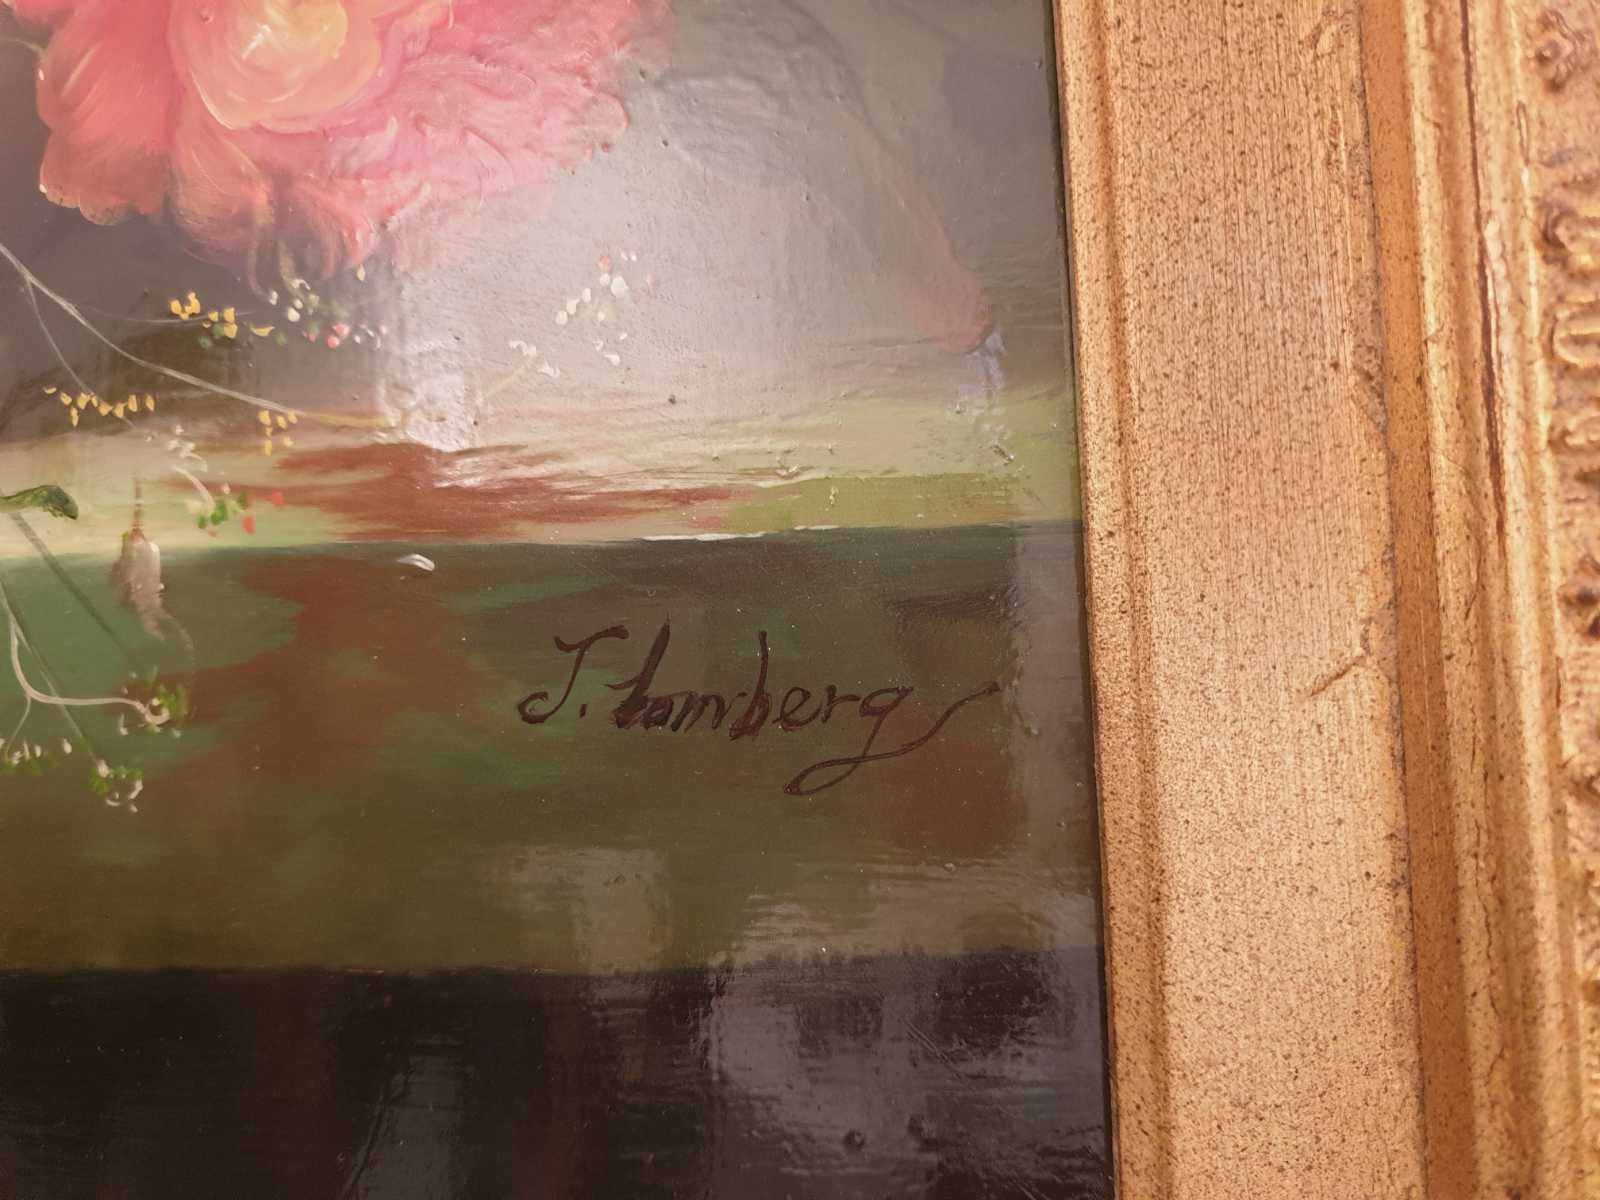 Ölbild des Künstlers Lomberg, zeigt florales Stilleben, Signatur.